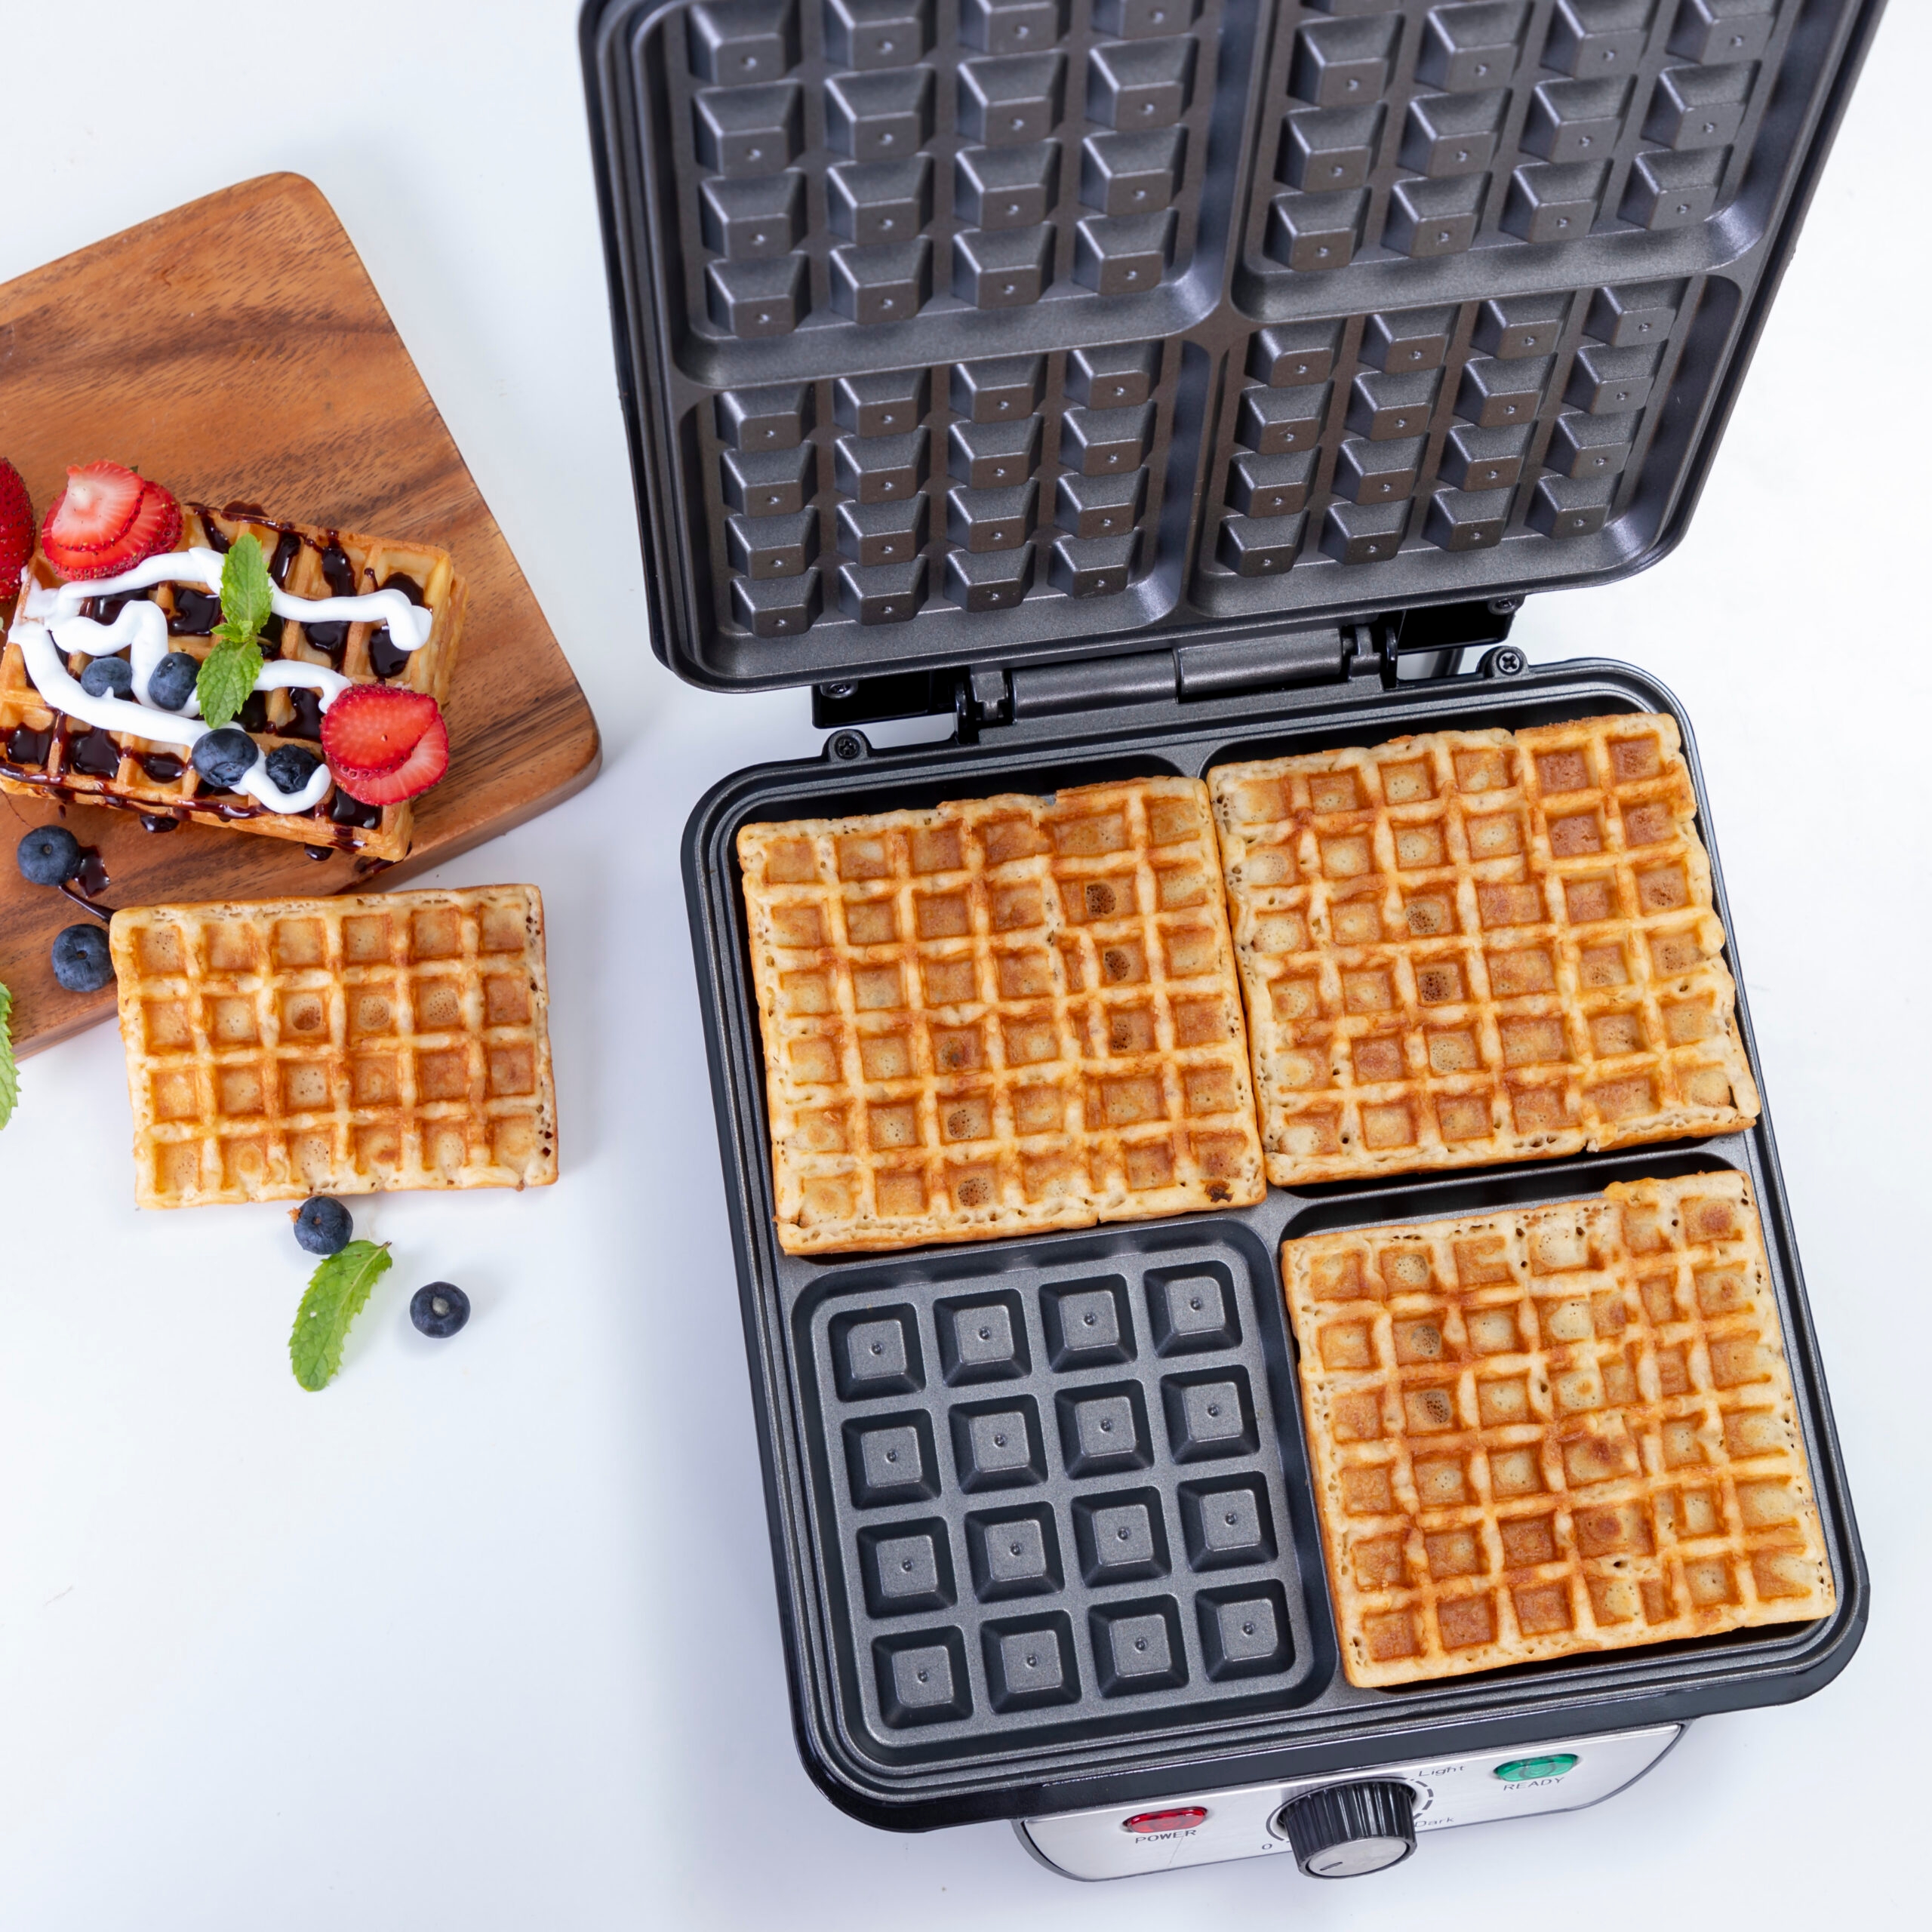 جهاز الوافل 4 قطع 1100 واط مقاوم للإلتصاق جيباس Geepas Waffle Maker - 9}